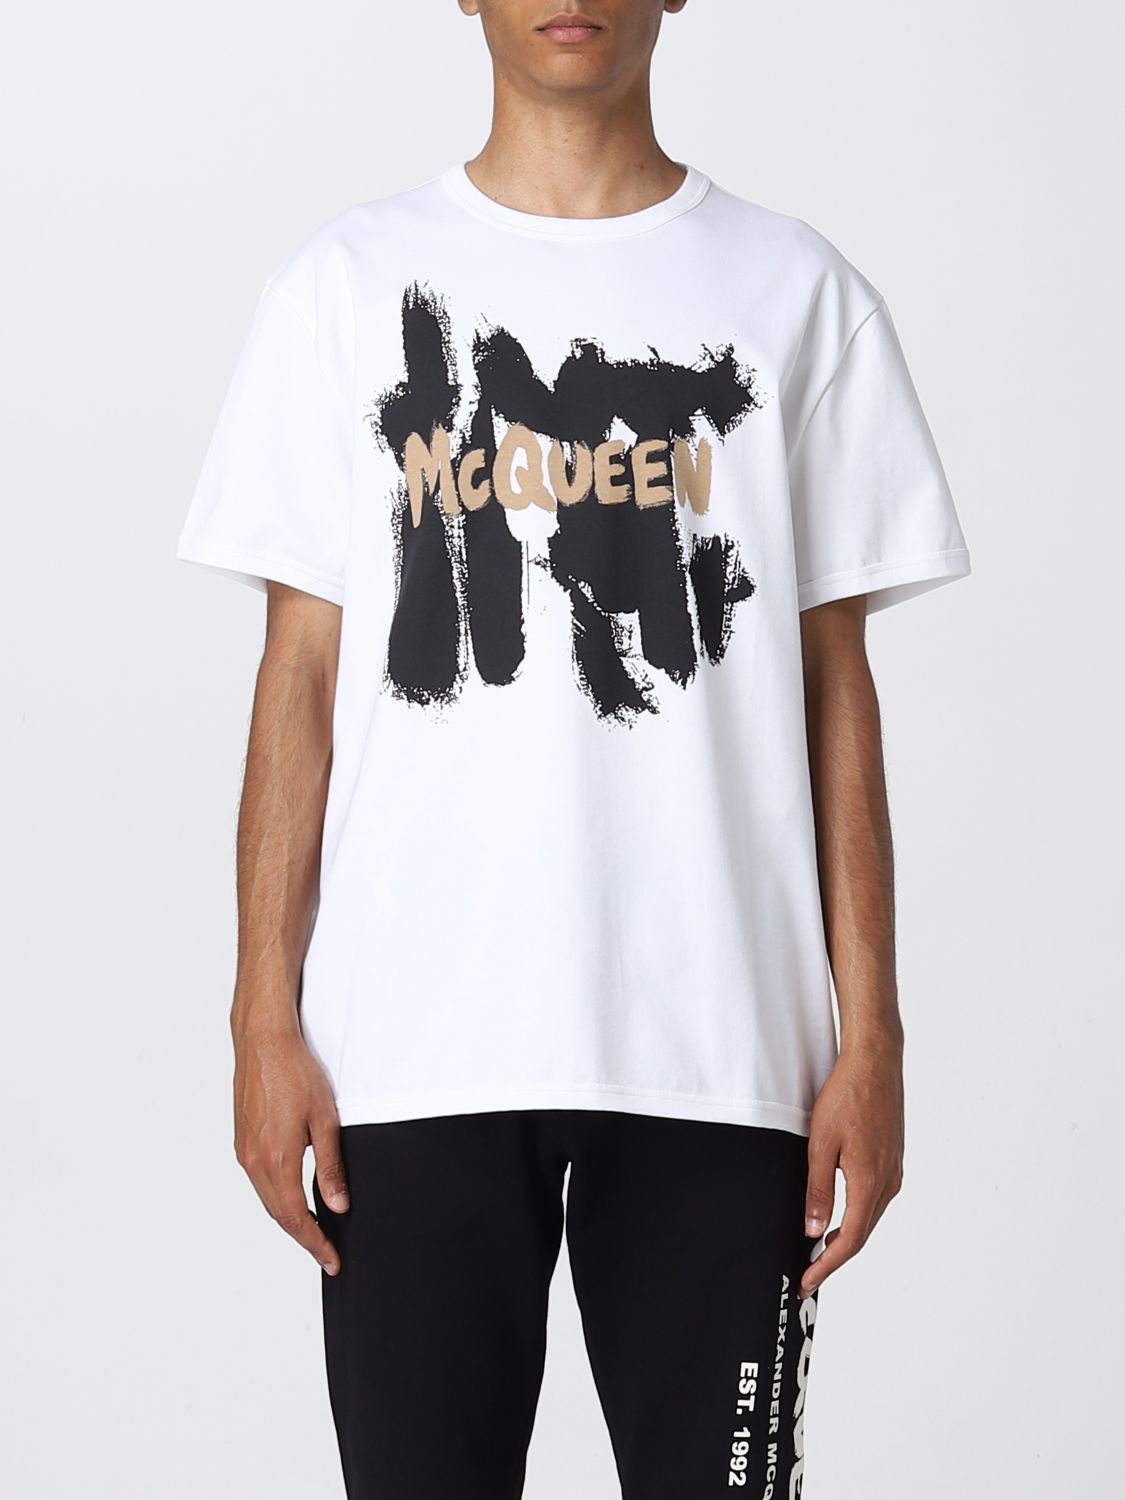 ALEXANDER MCQUEEN: t-shirt with maxi logo - White | Alexander Mcqueen t ...